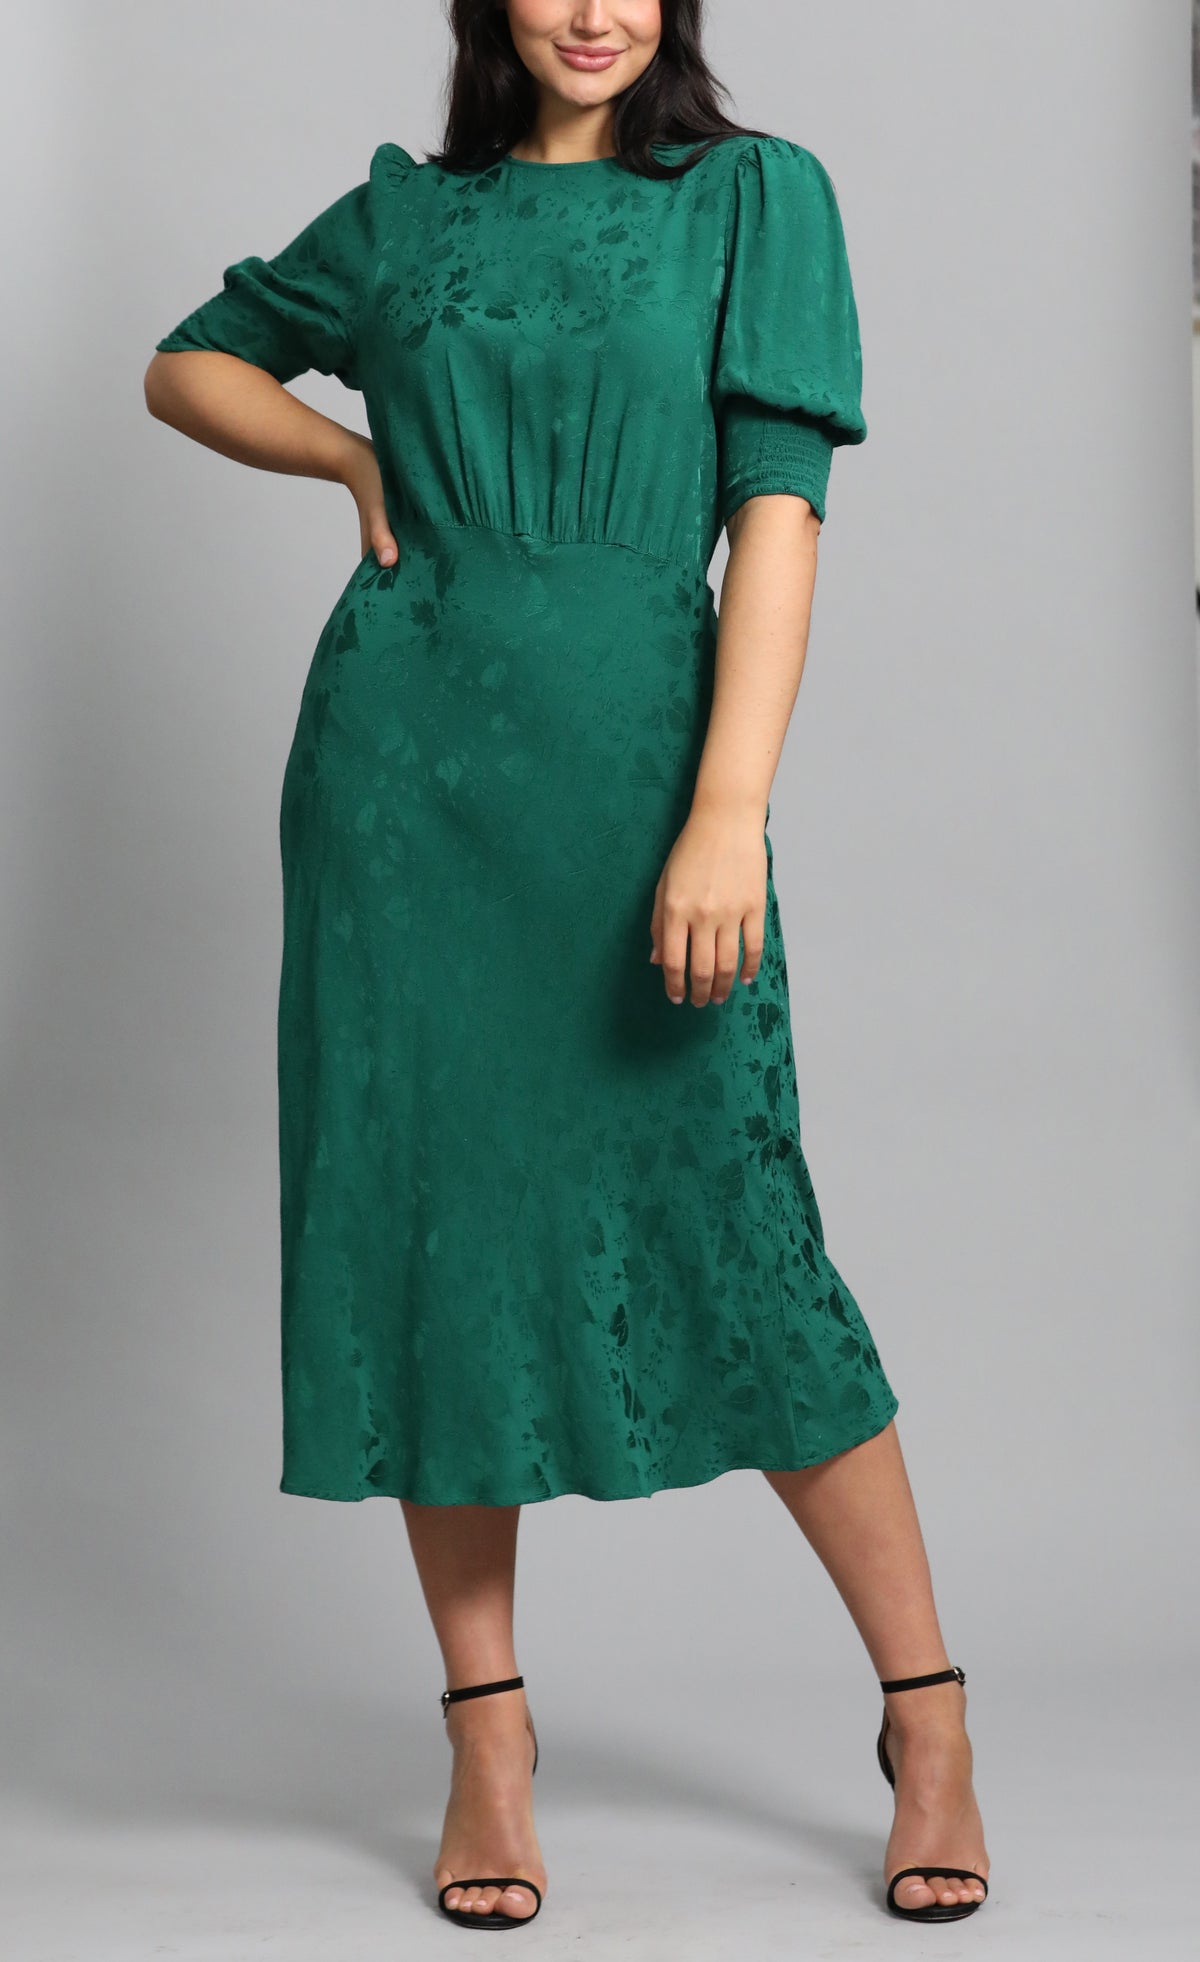 Lucile Green Dress